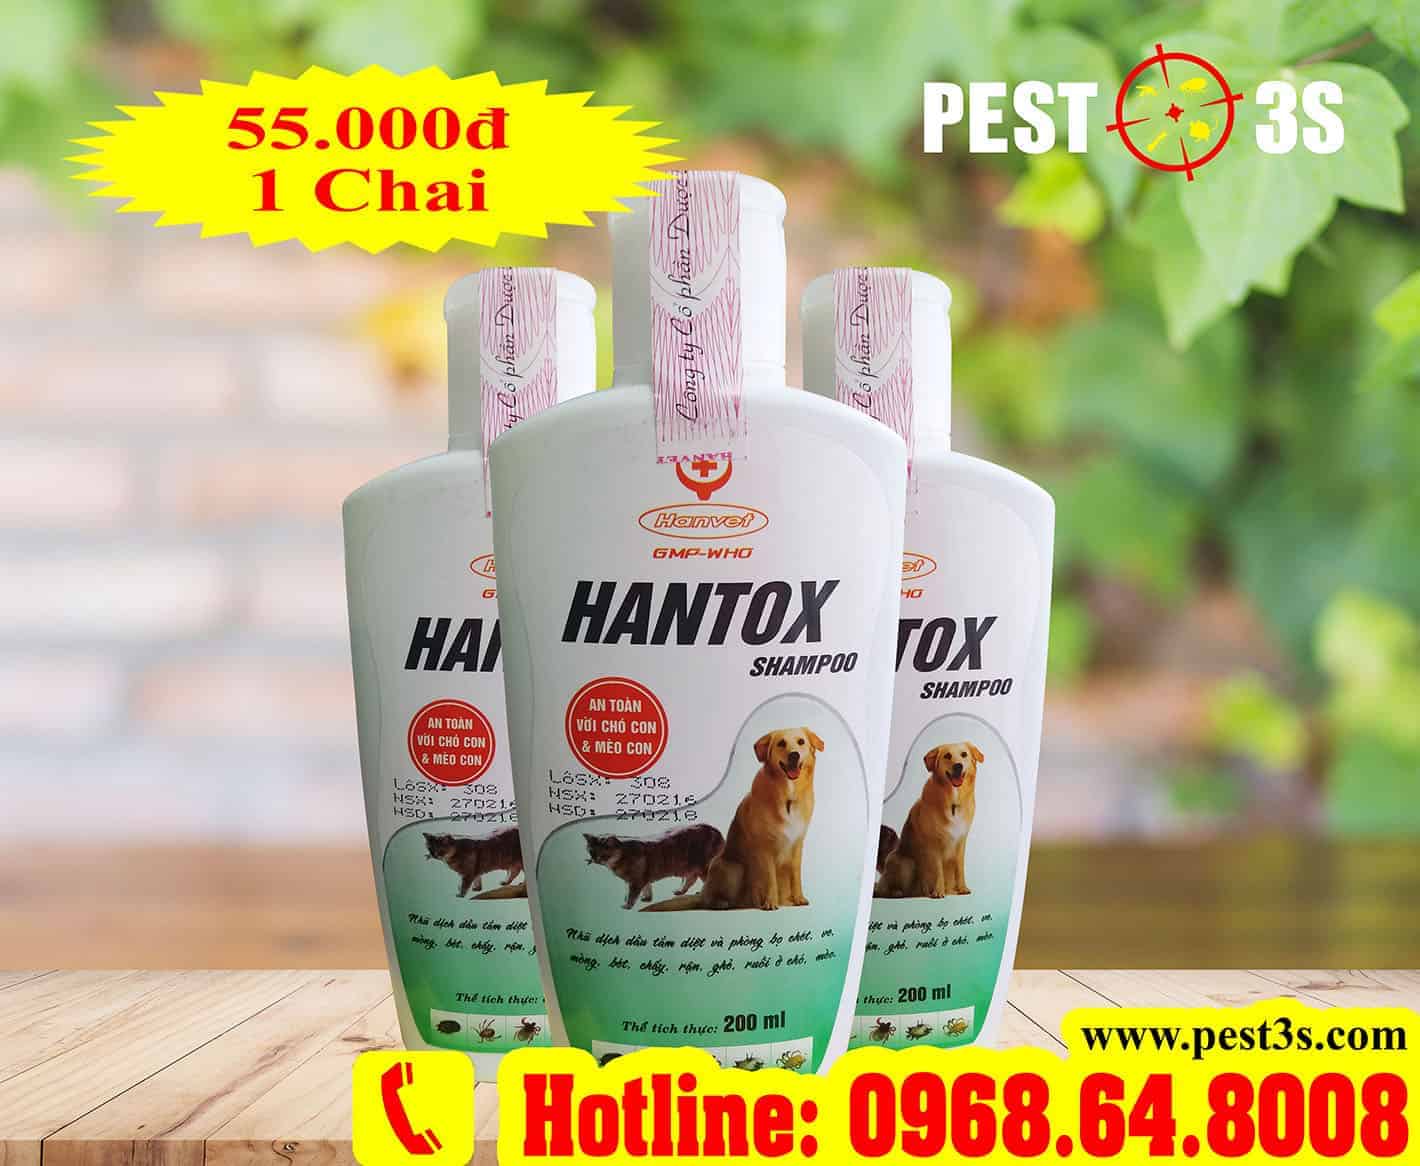 Hantox Shampoo (200ml) Chai xanh - Sữa tắm phòng và diệt bọ chét, ve bét, chấy rận...